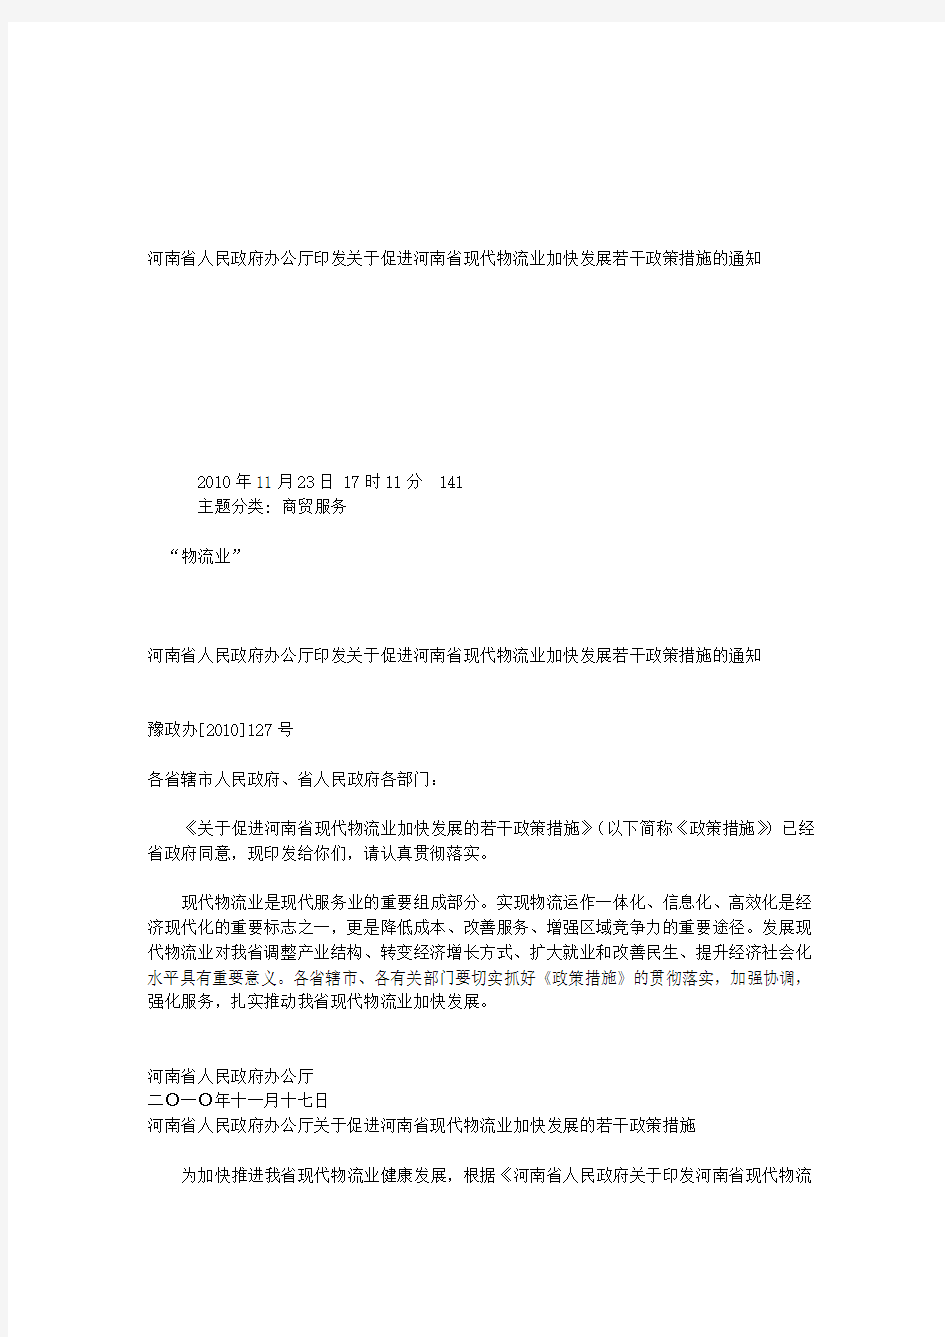 河南省人民政府办公厅印发关于促进河南省现代物流业加快发展若干政策